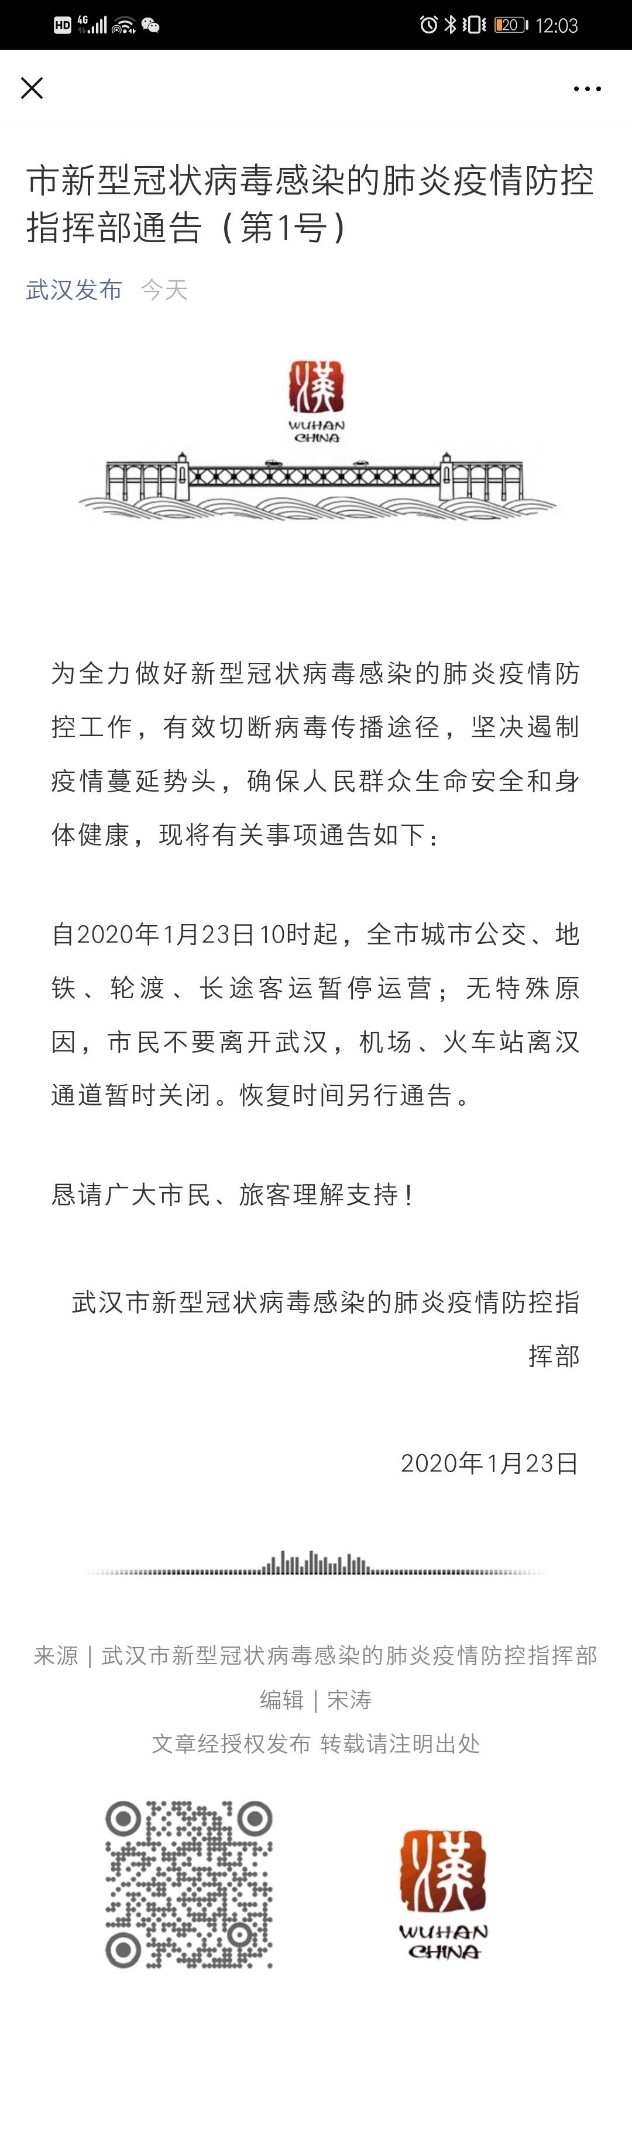 武汉交通系统停运 电影院暂停营业 湖北启动II级应急响应应对疫情